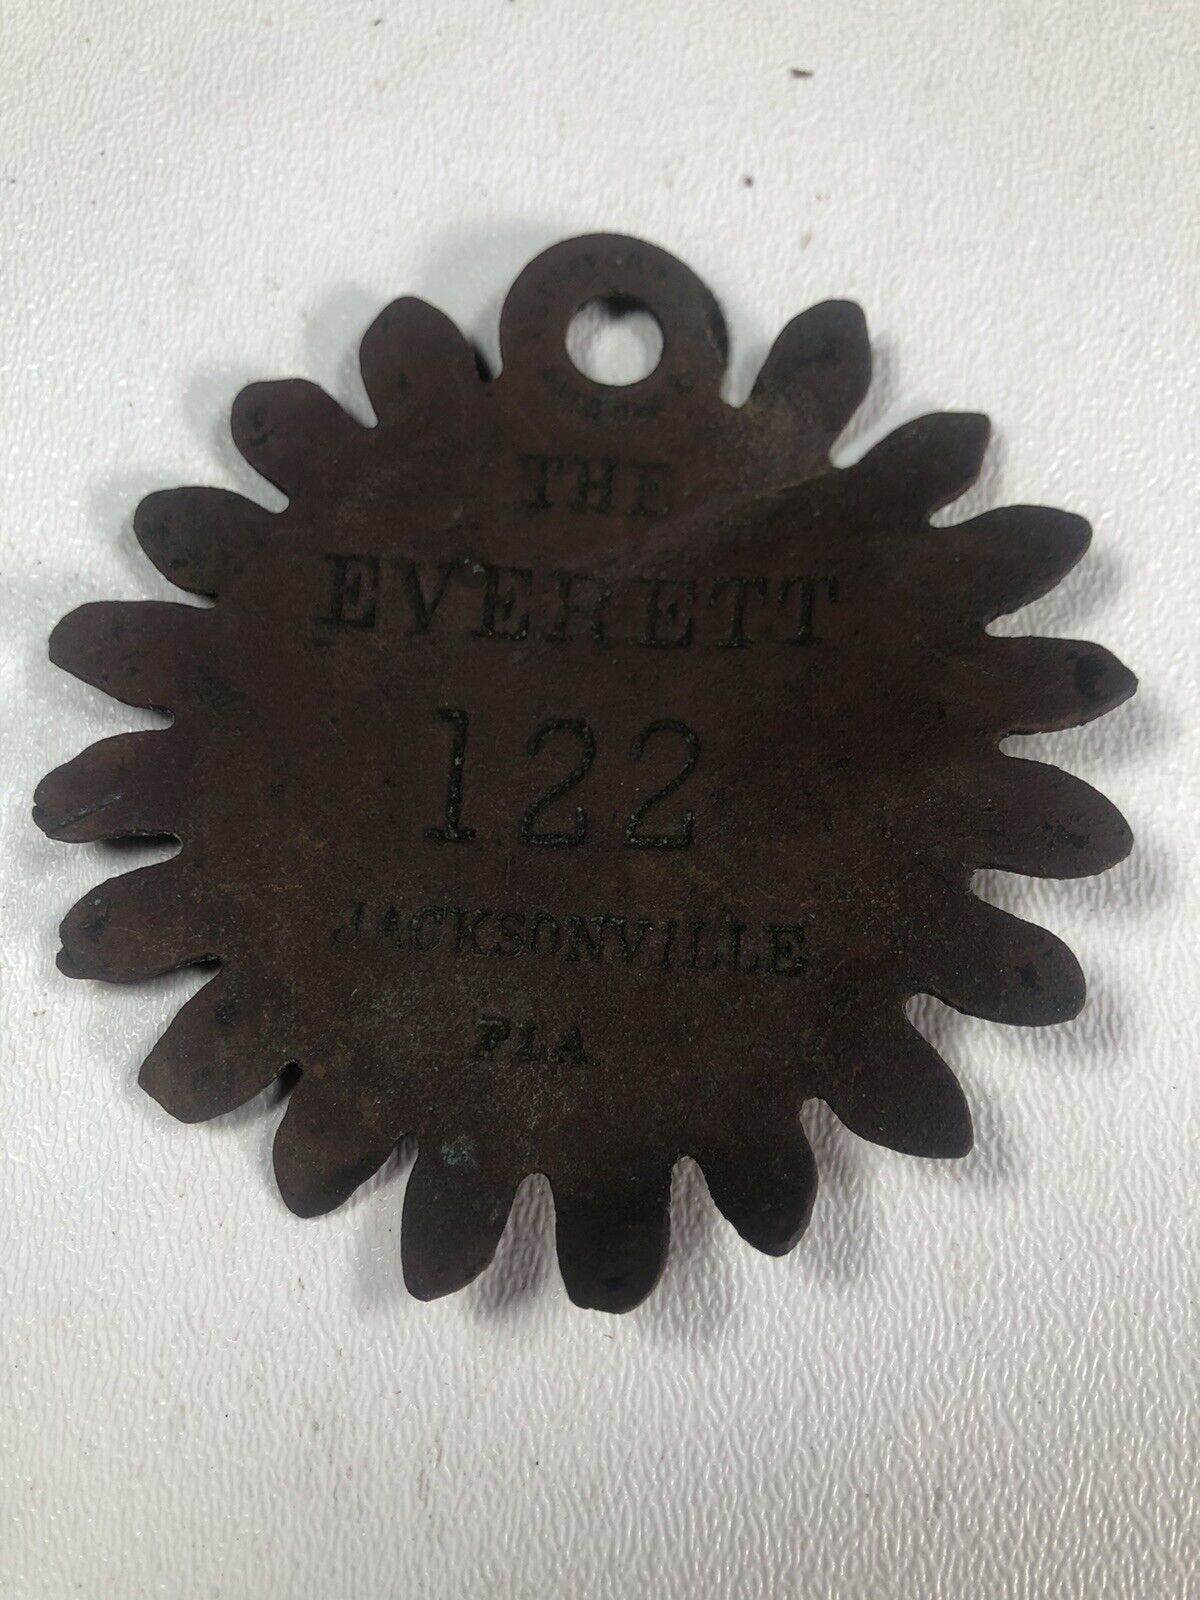 “The Everett” Jacksonville, Florida vintage hotel key tag